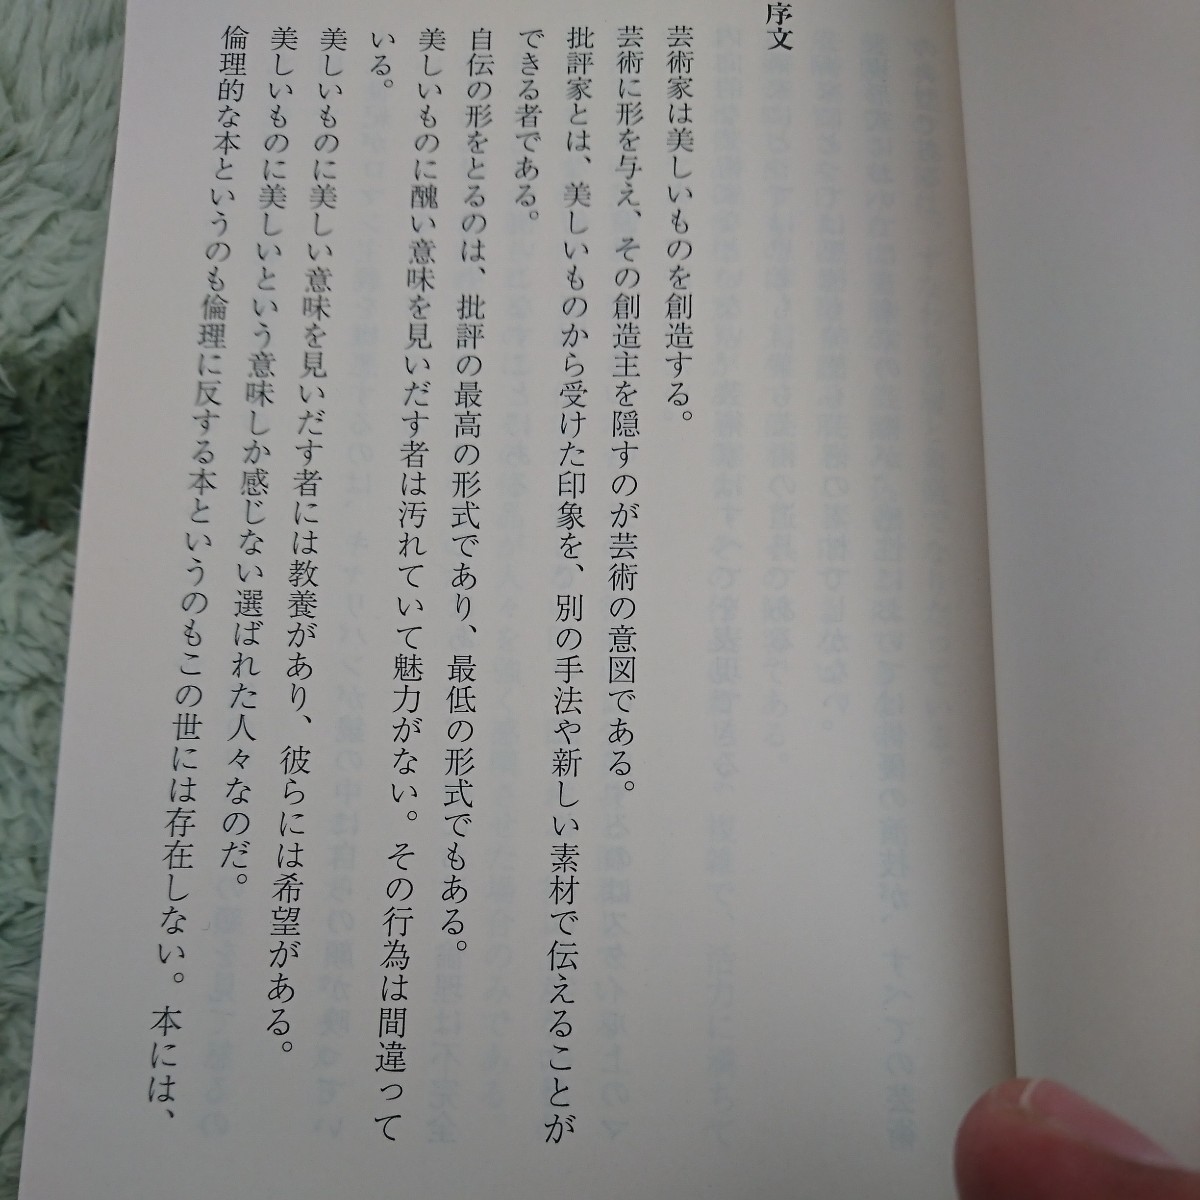  дуриан * серый. . изображение ( Kobunsha классика новый перевод библиотека KAwa1-1) wild | работа . дерево ...| перевод 